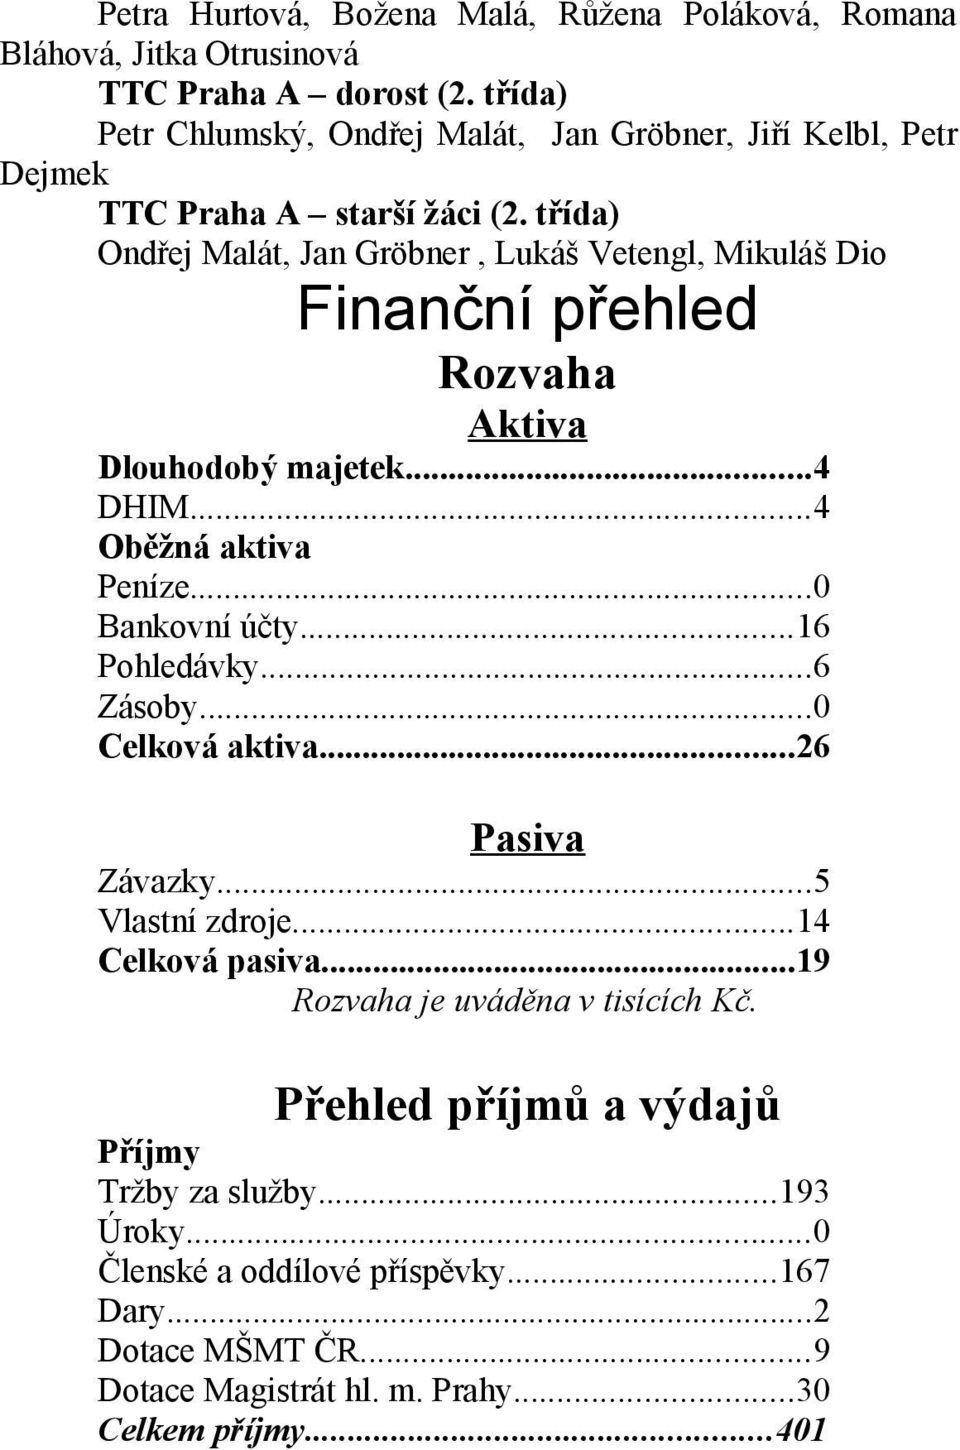 třída) Ondřej Malát, Jan Gröbner, Lukáš Vetengl, Mikuláš Dio Finanční přehled Rozvaha Aktiva Dlouhodobý majetek...4 DHIM...4 Oběžná aktiva Peníze...0 Bankovní účty.